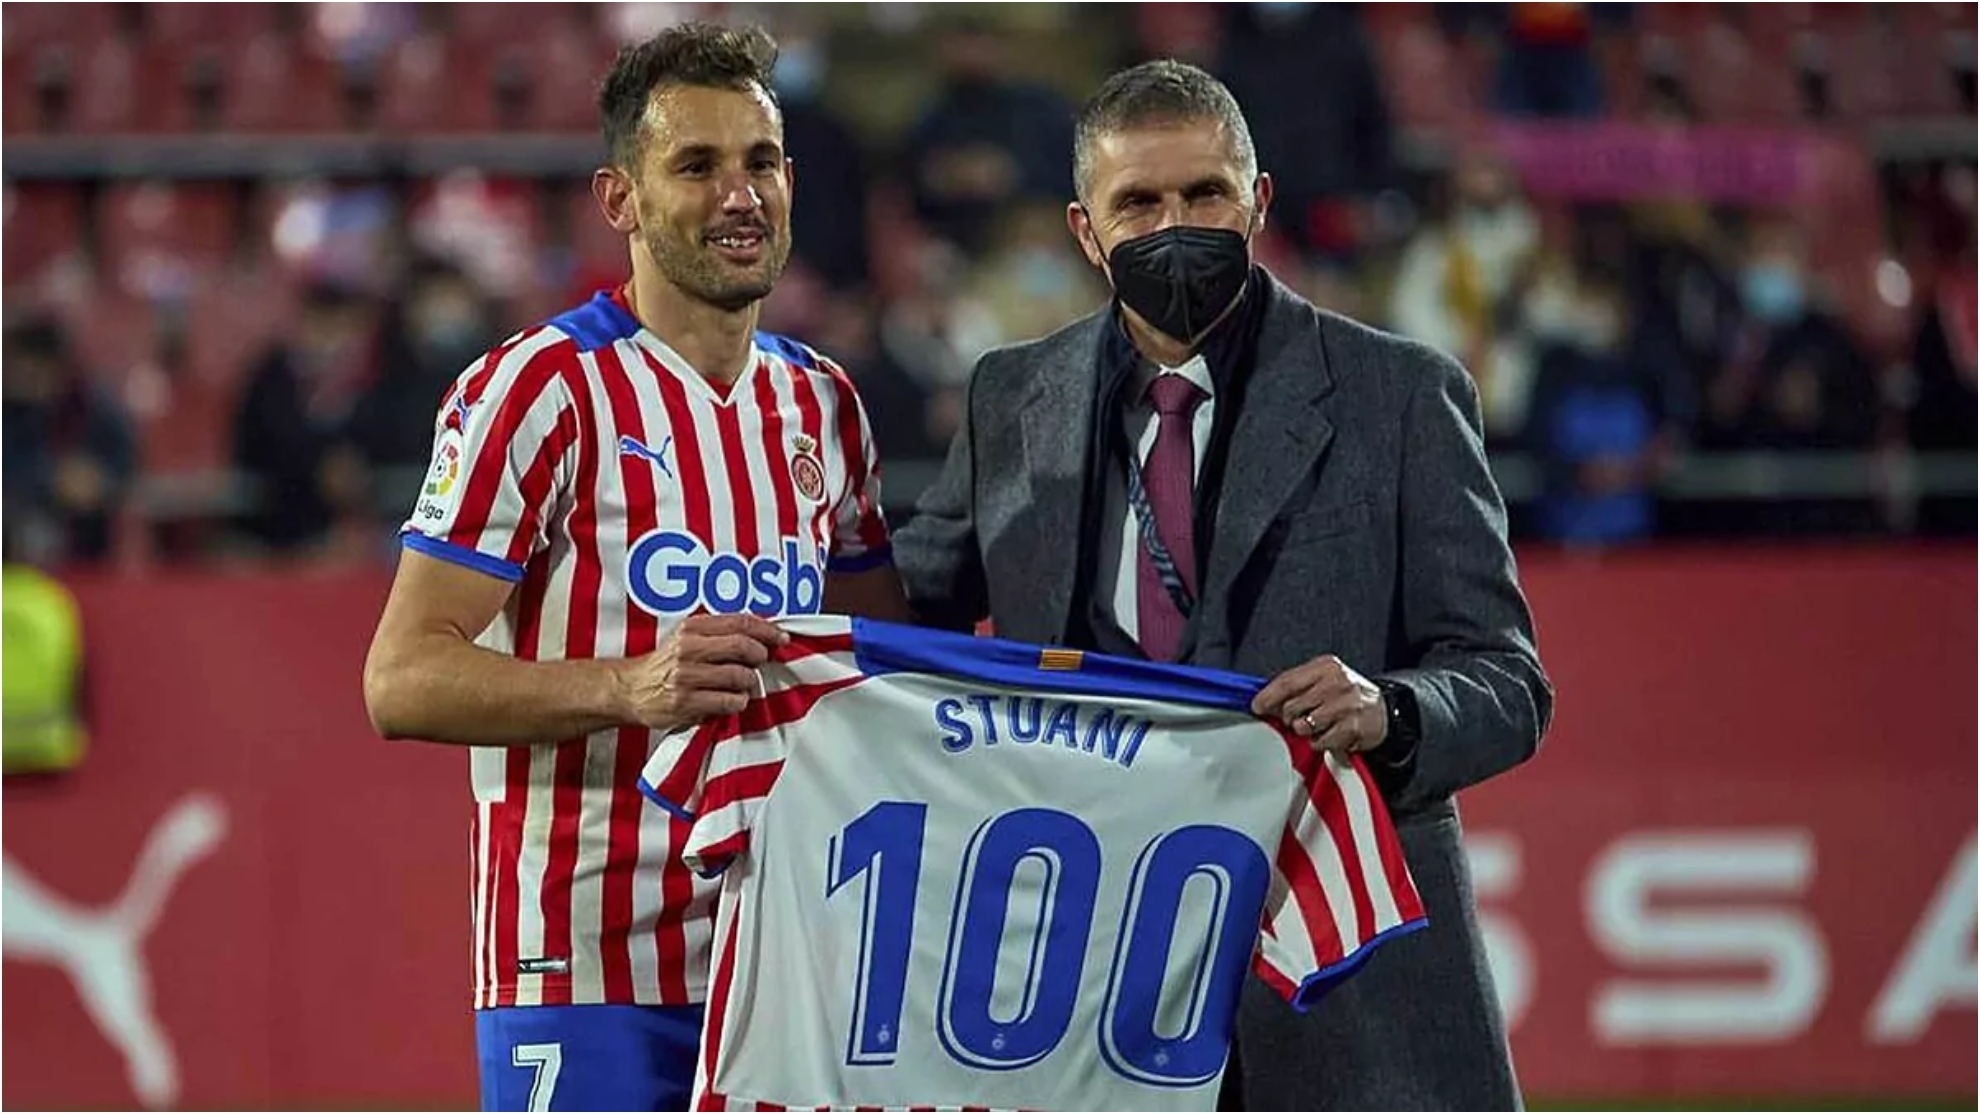 Stuani, recibiendo el homenaje del presidente Delfi Geli por sus 100 goles en Girona